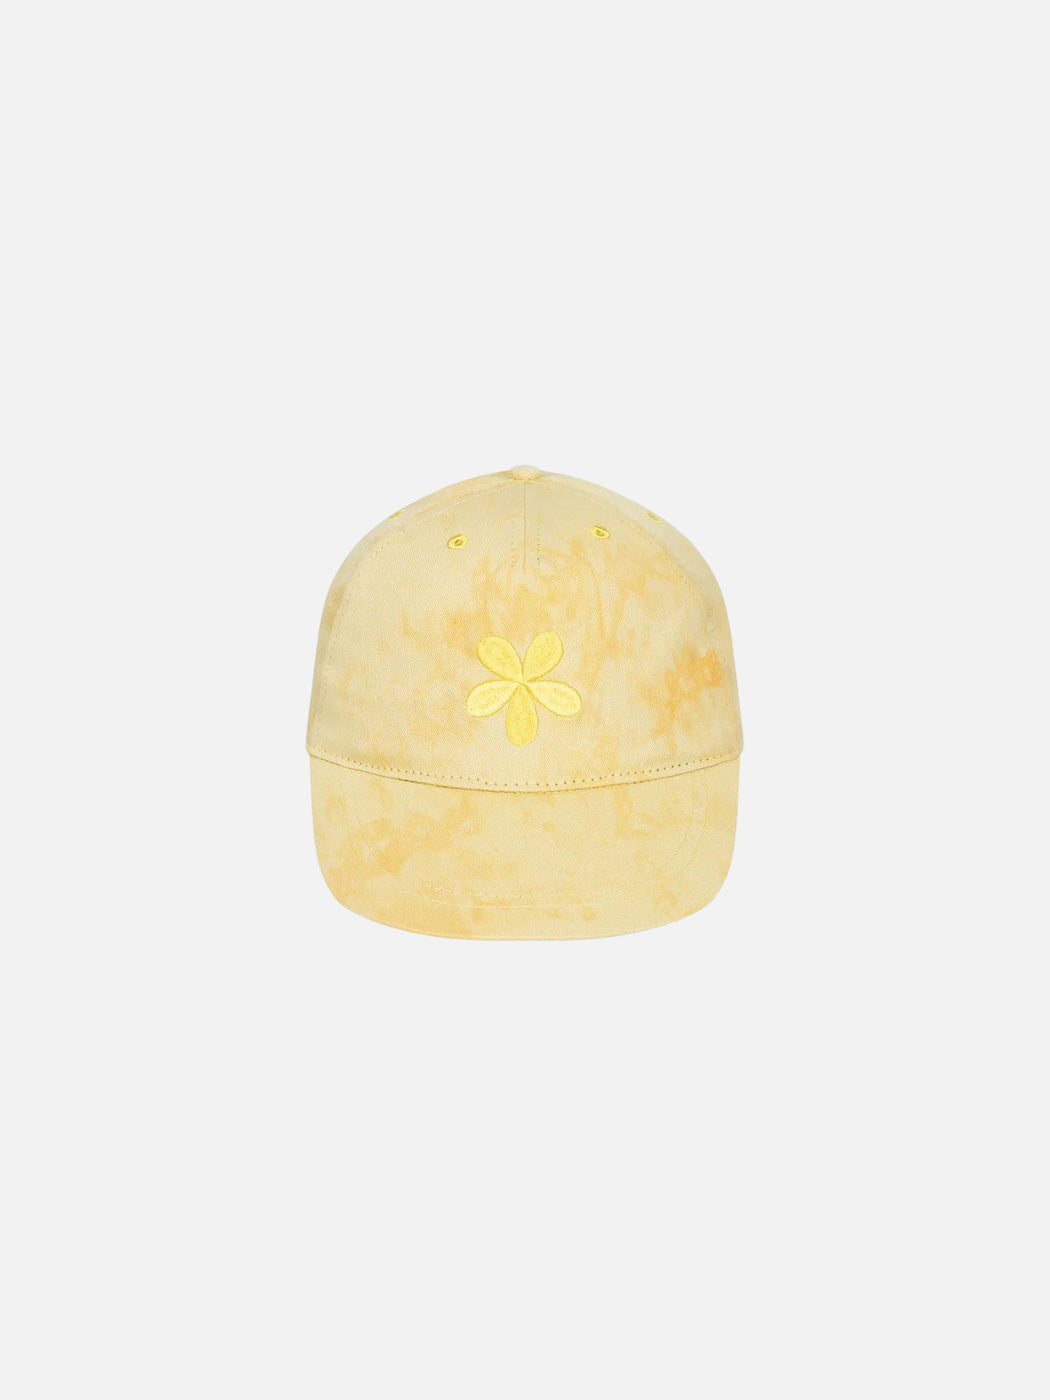 Flower Cap - Yellow Tie Dye